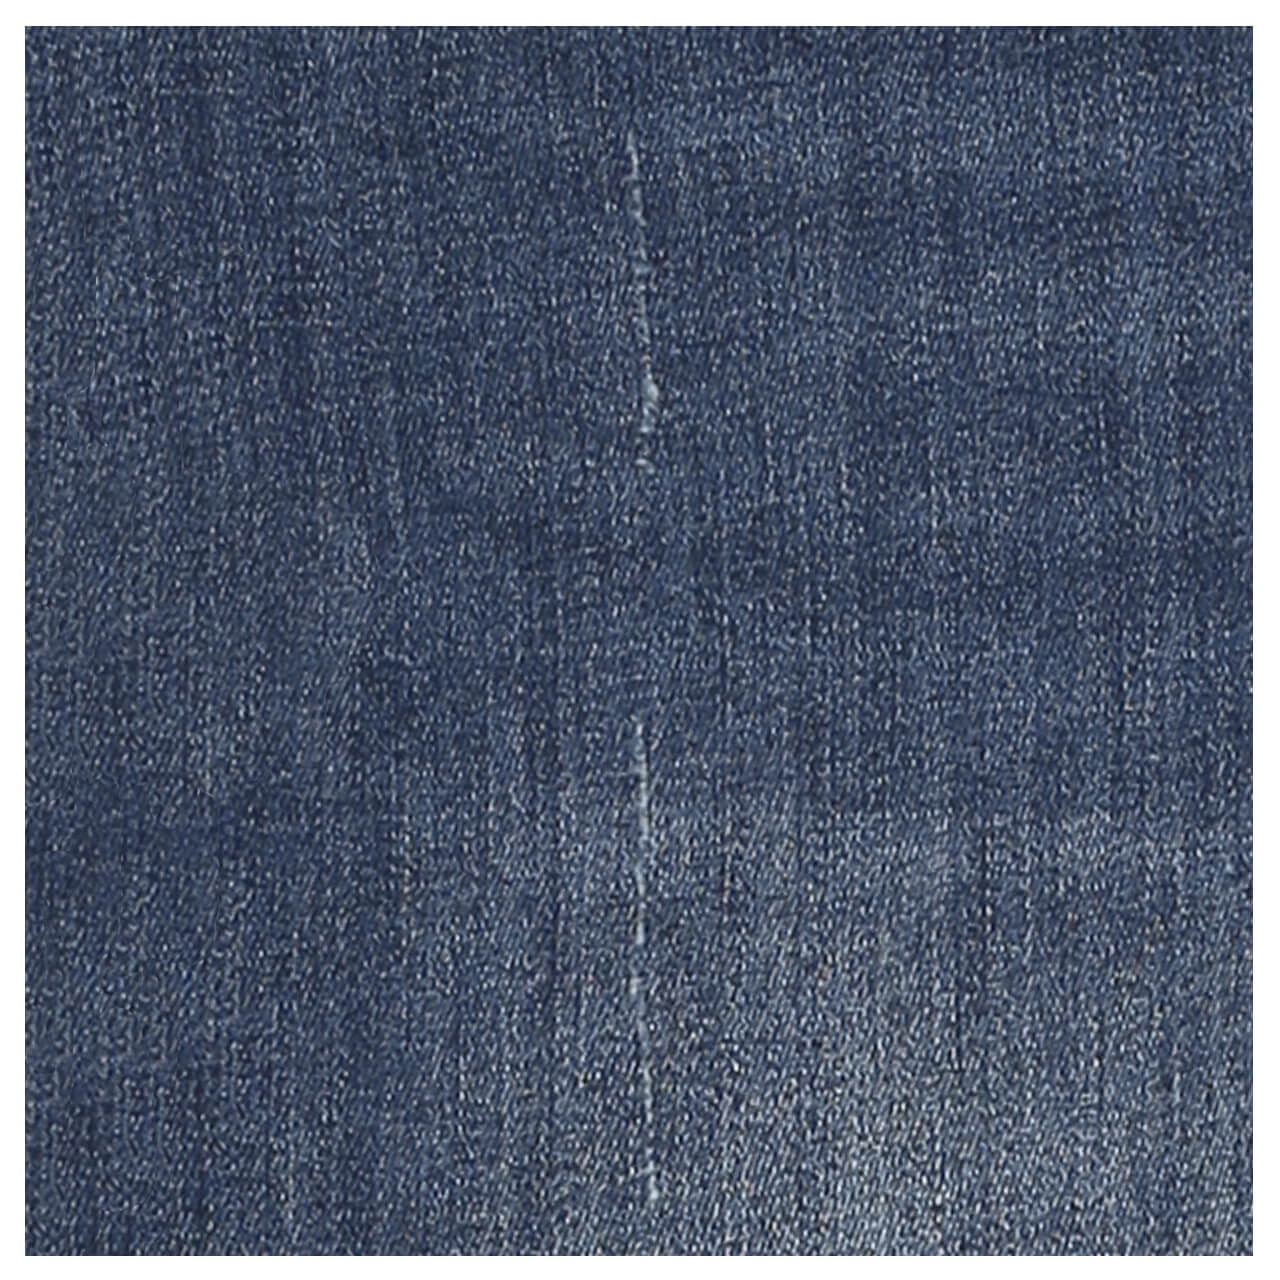 Buena Vista Jeans Florida Stretch Denim für Damen in Mittelblau verwaschen mit Nieten und Destroyed-Effekten, FarbNr.: 2403